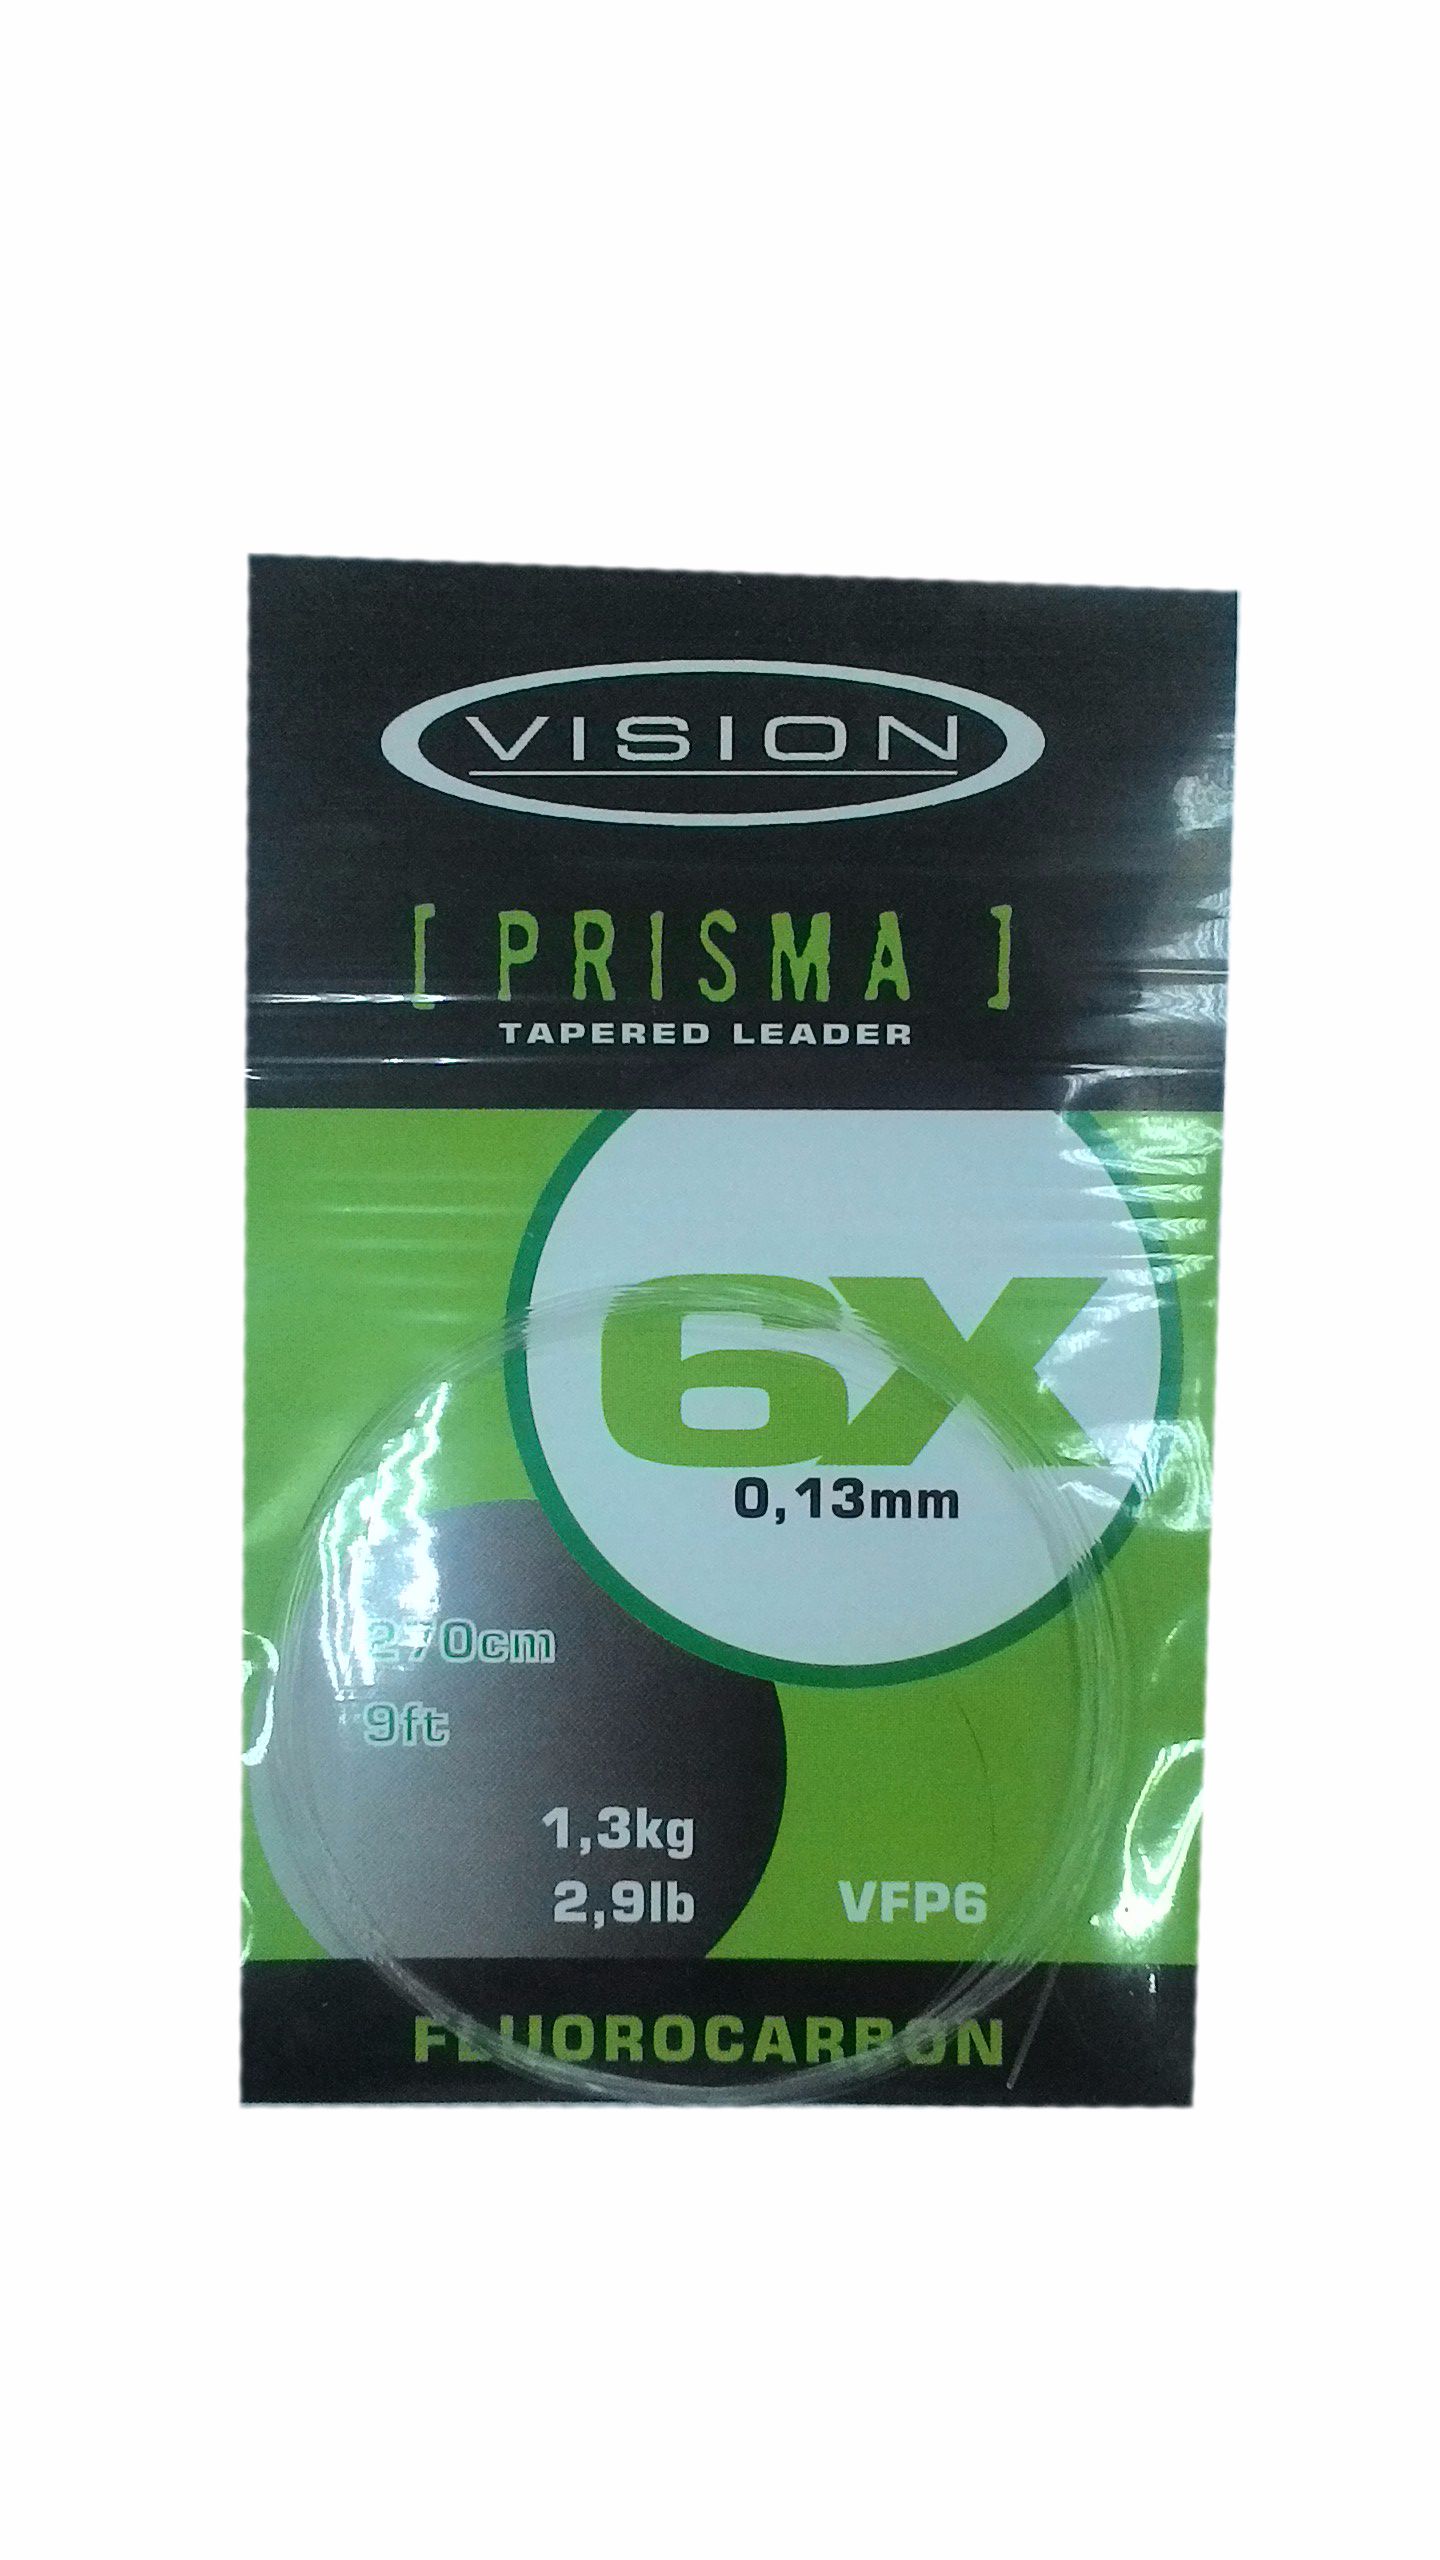 Подлесок Vision Prisma fluorocarbon rader 6X - фото 1